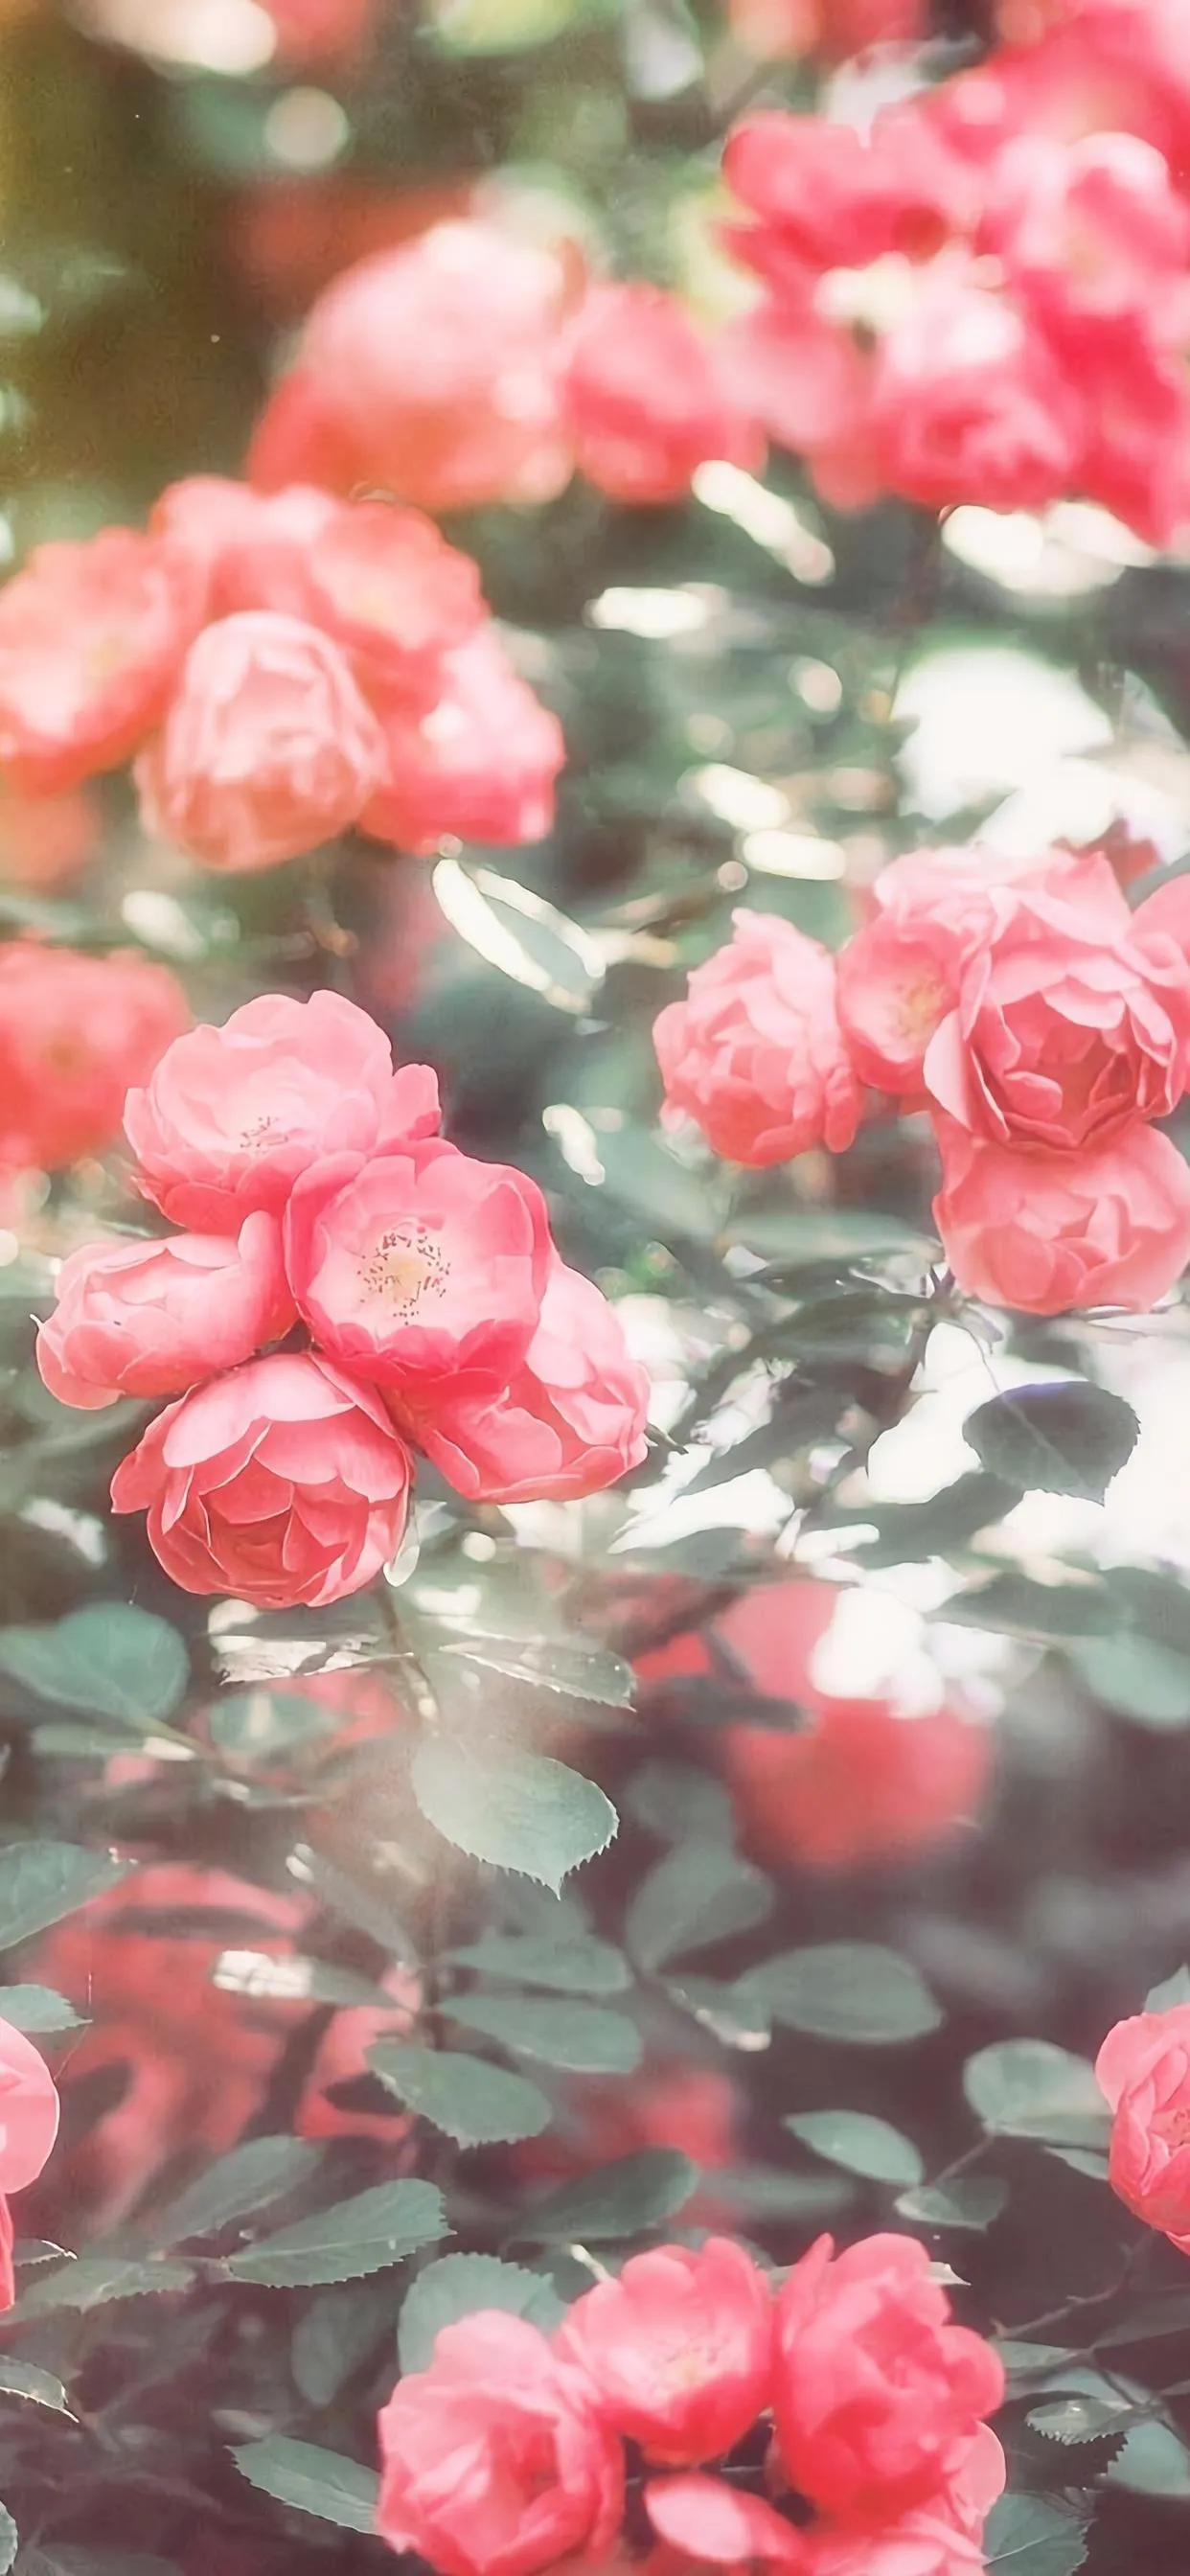 这个季节 蔷薇盛开 可以分享一下你拍摄的蔷薇花美图么 蔷薇是一种非常美丽的花卉 花语寓意跟爱情有关 蔷薇的花语是爱情和